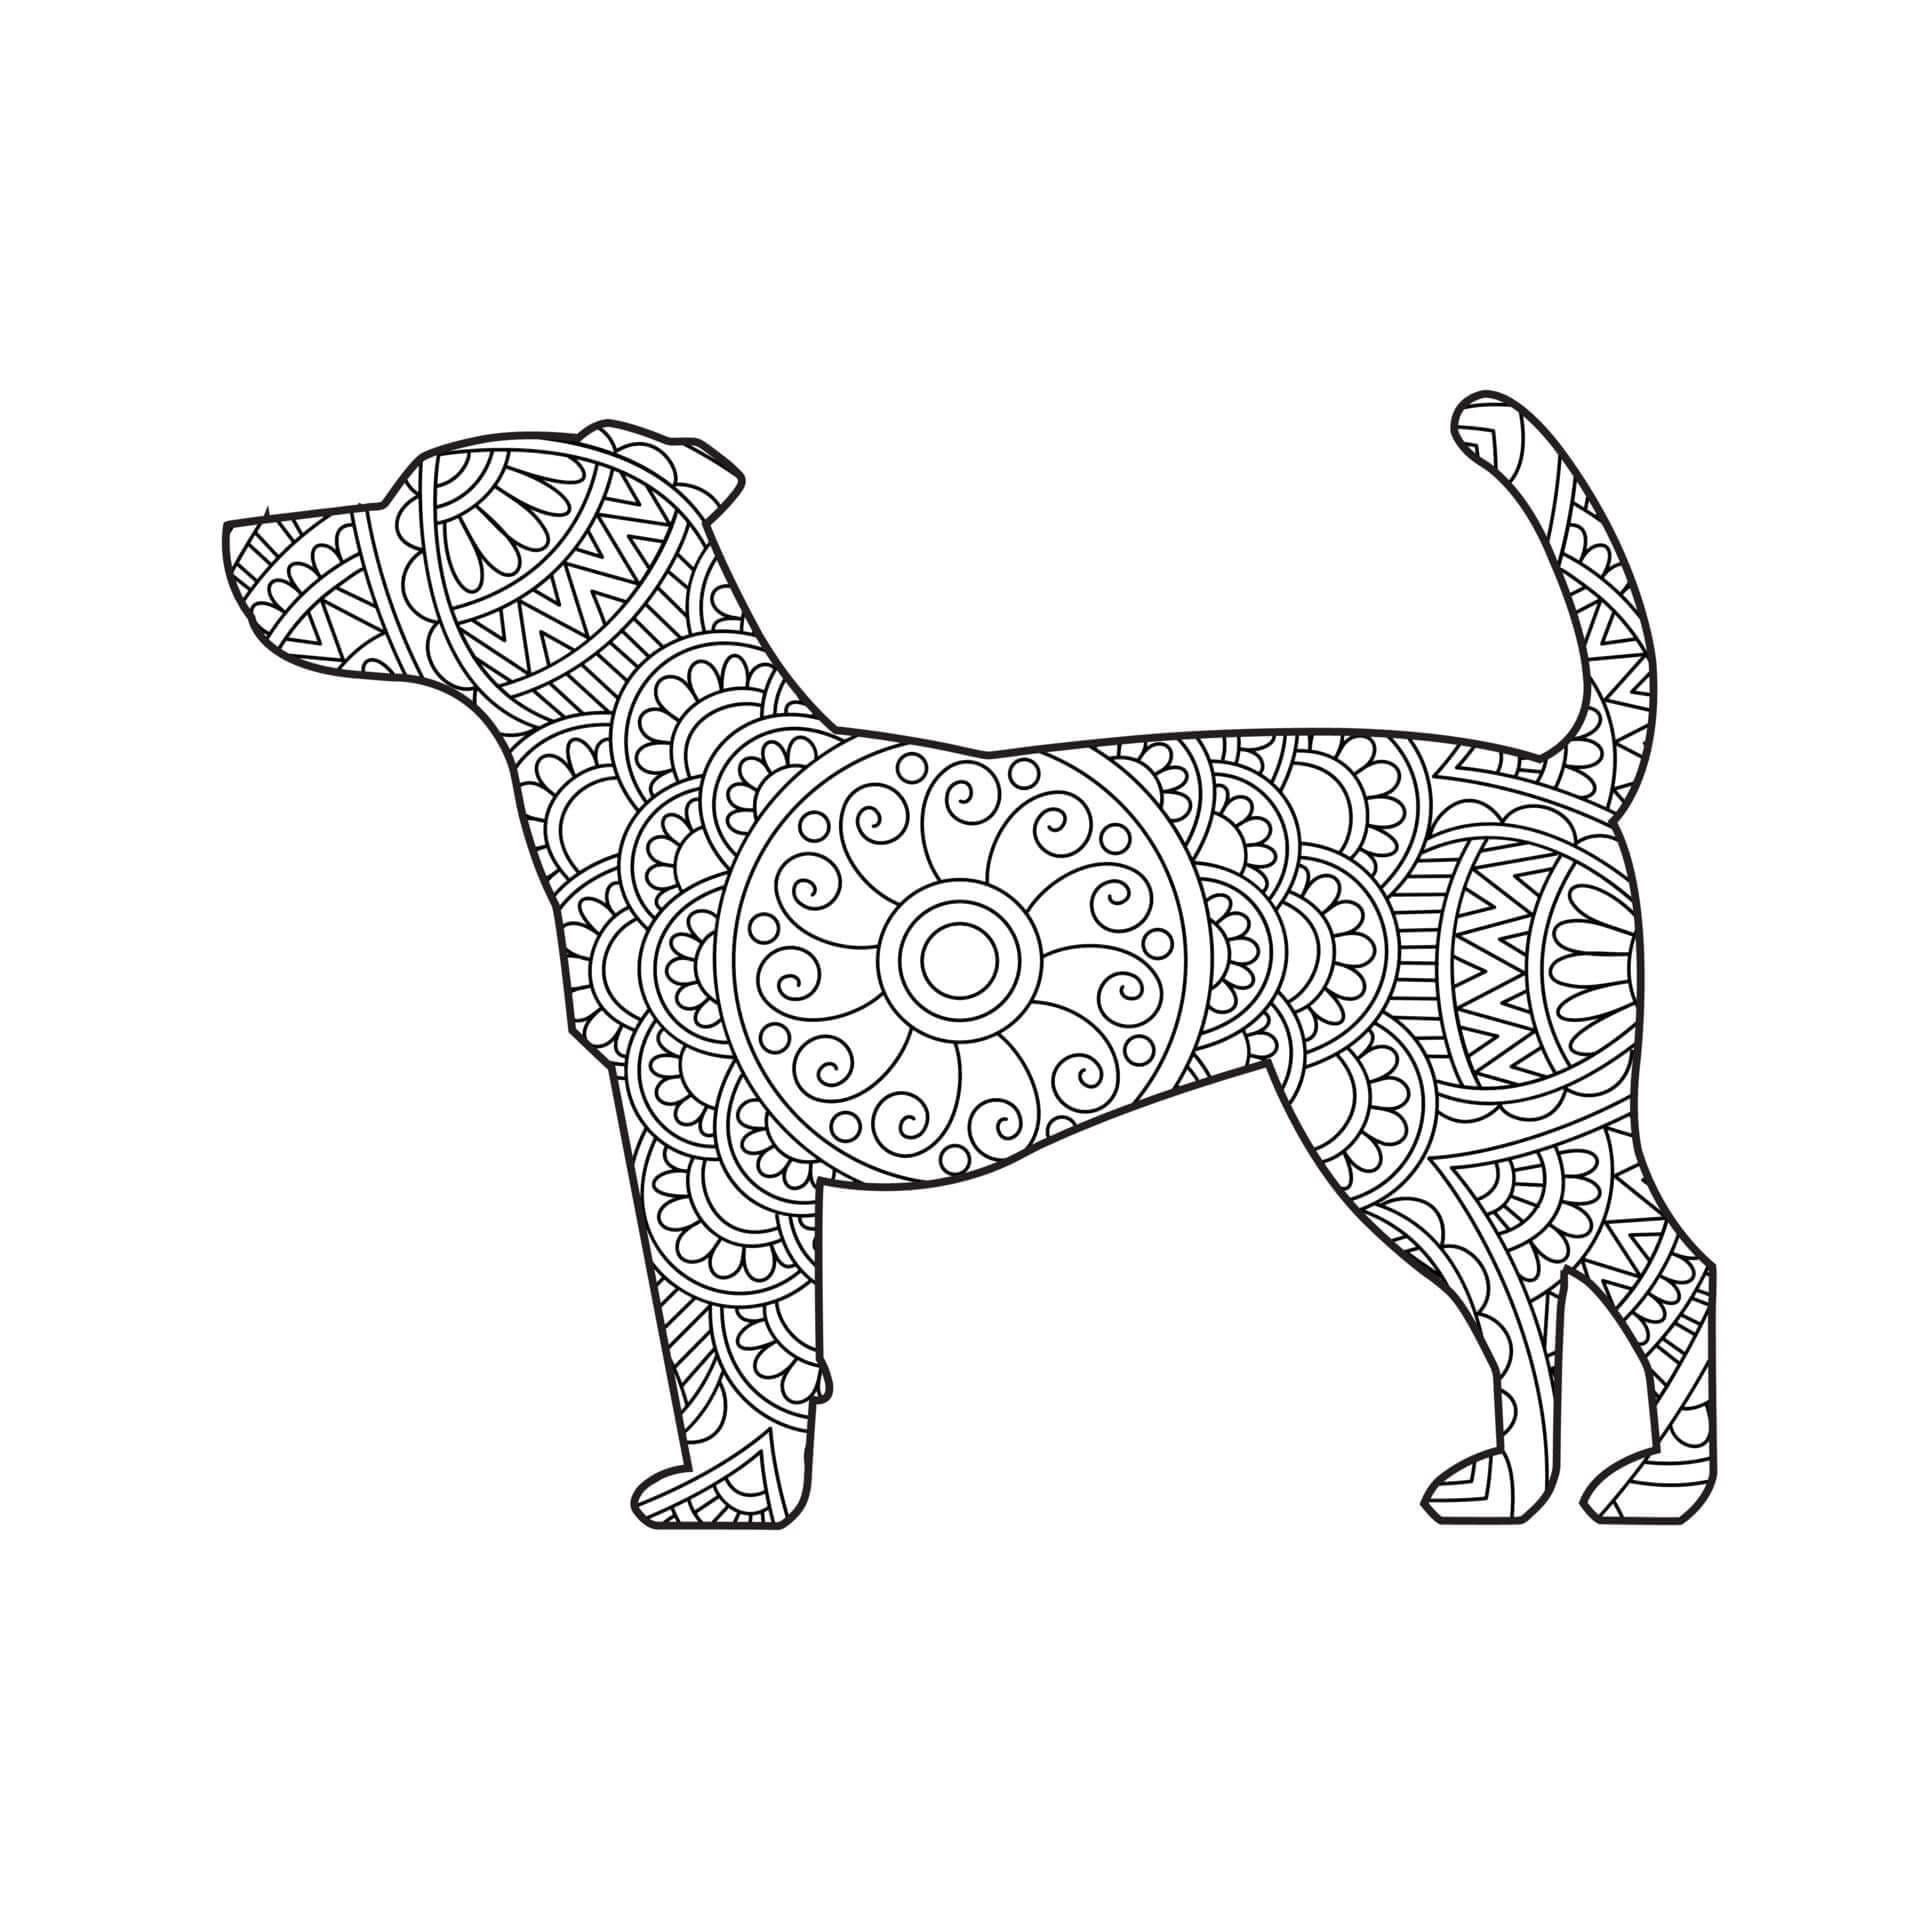 Dibujos de Mandala con diseño de Perro gratis para colorear